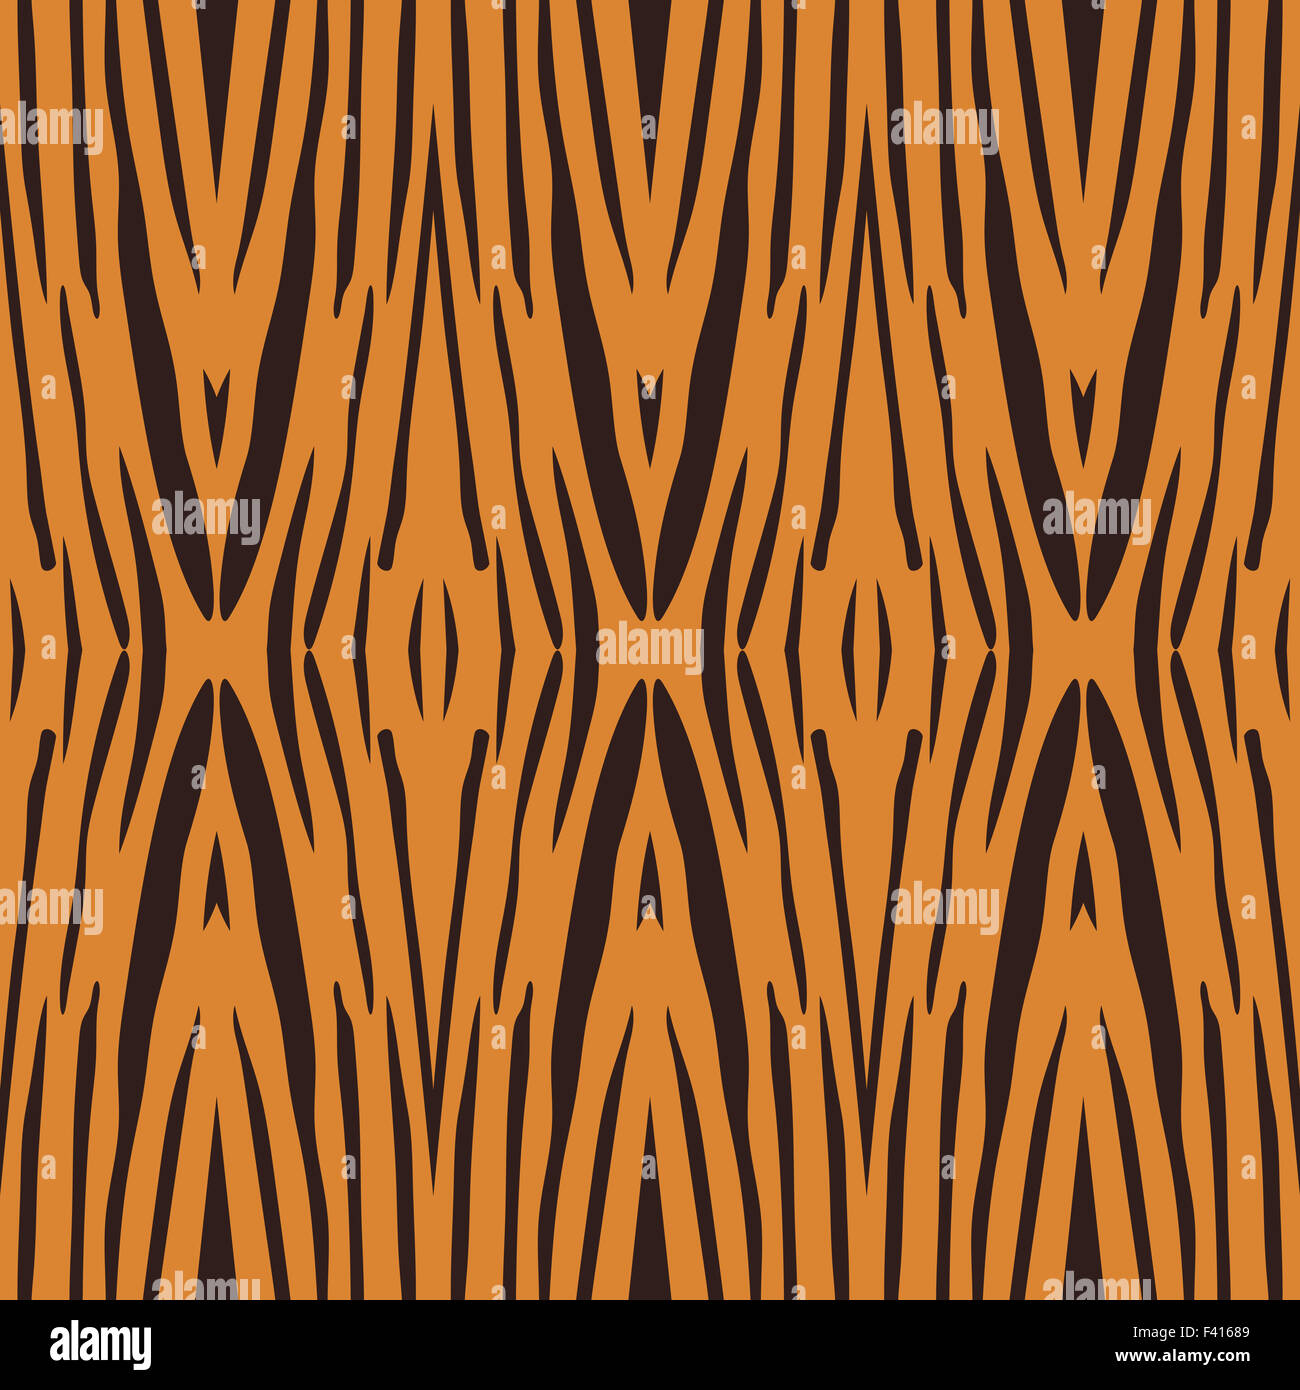 Vektor-Illustration der Tiger-Streifen-Muster. Schönes Muster von Mutter Natur gemacht. Stockfoto